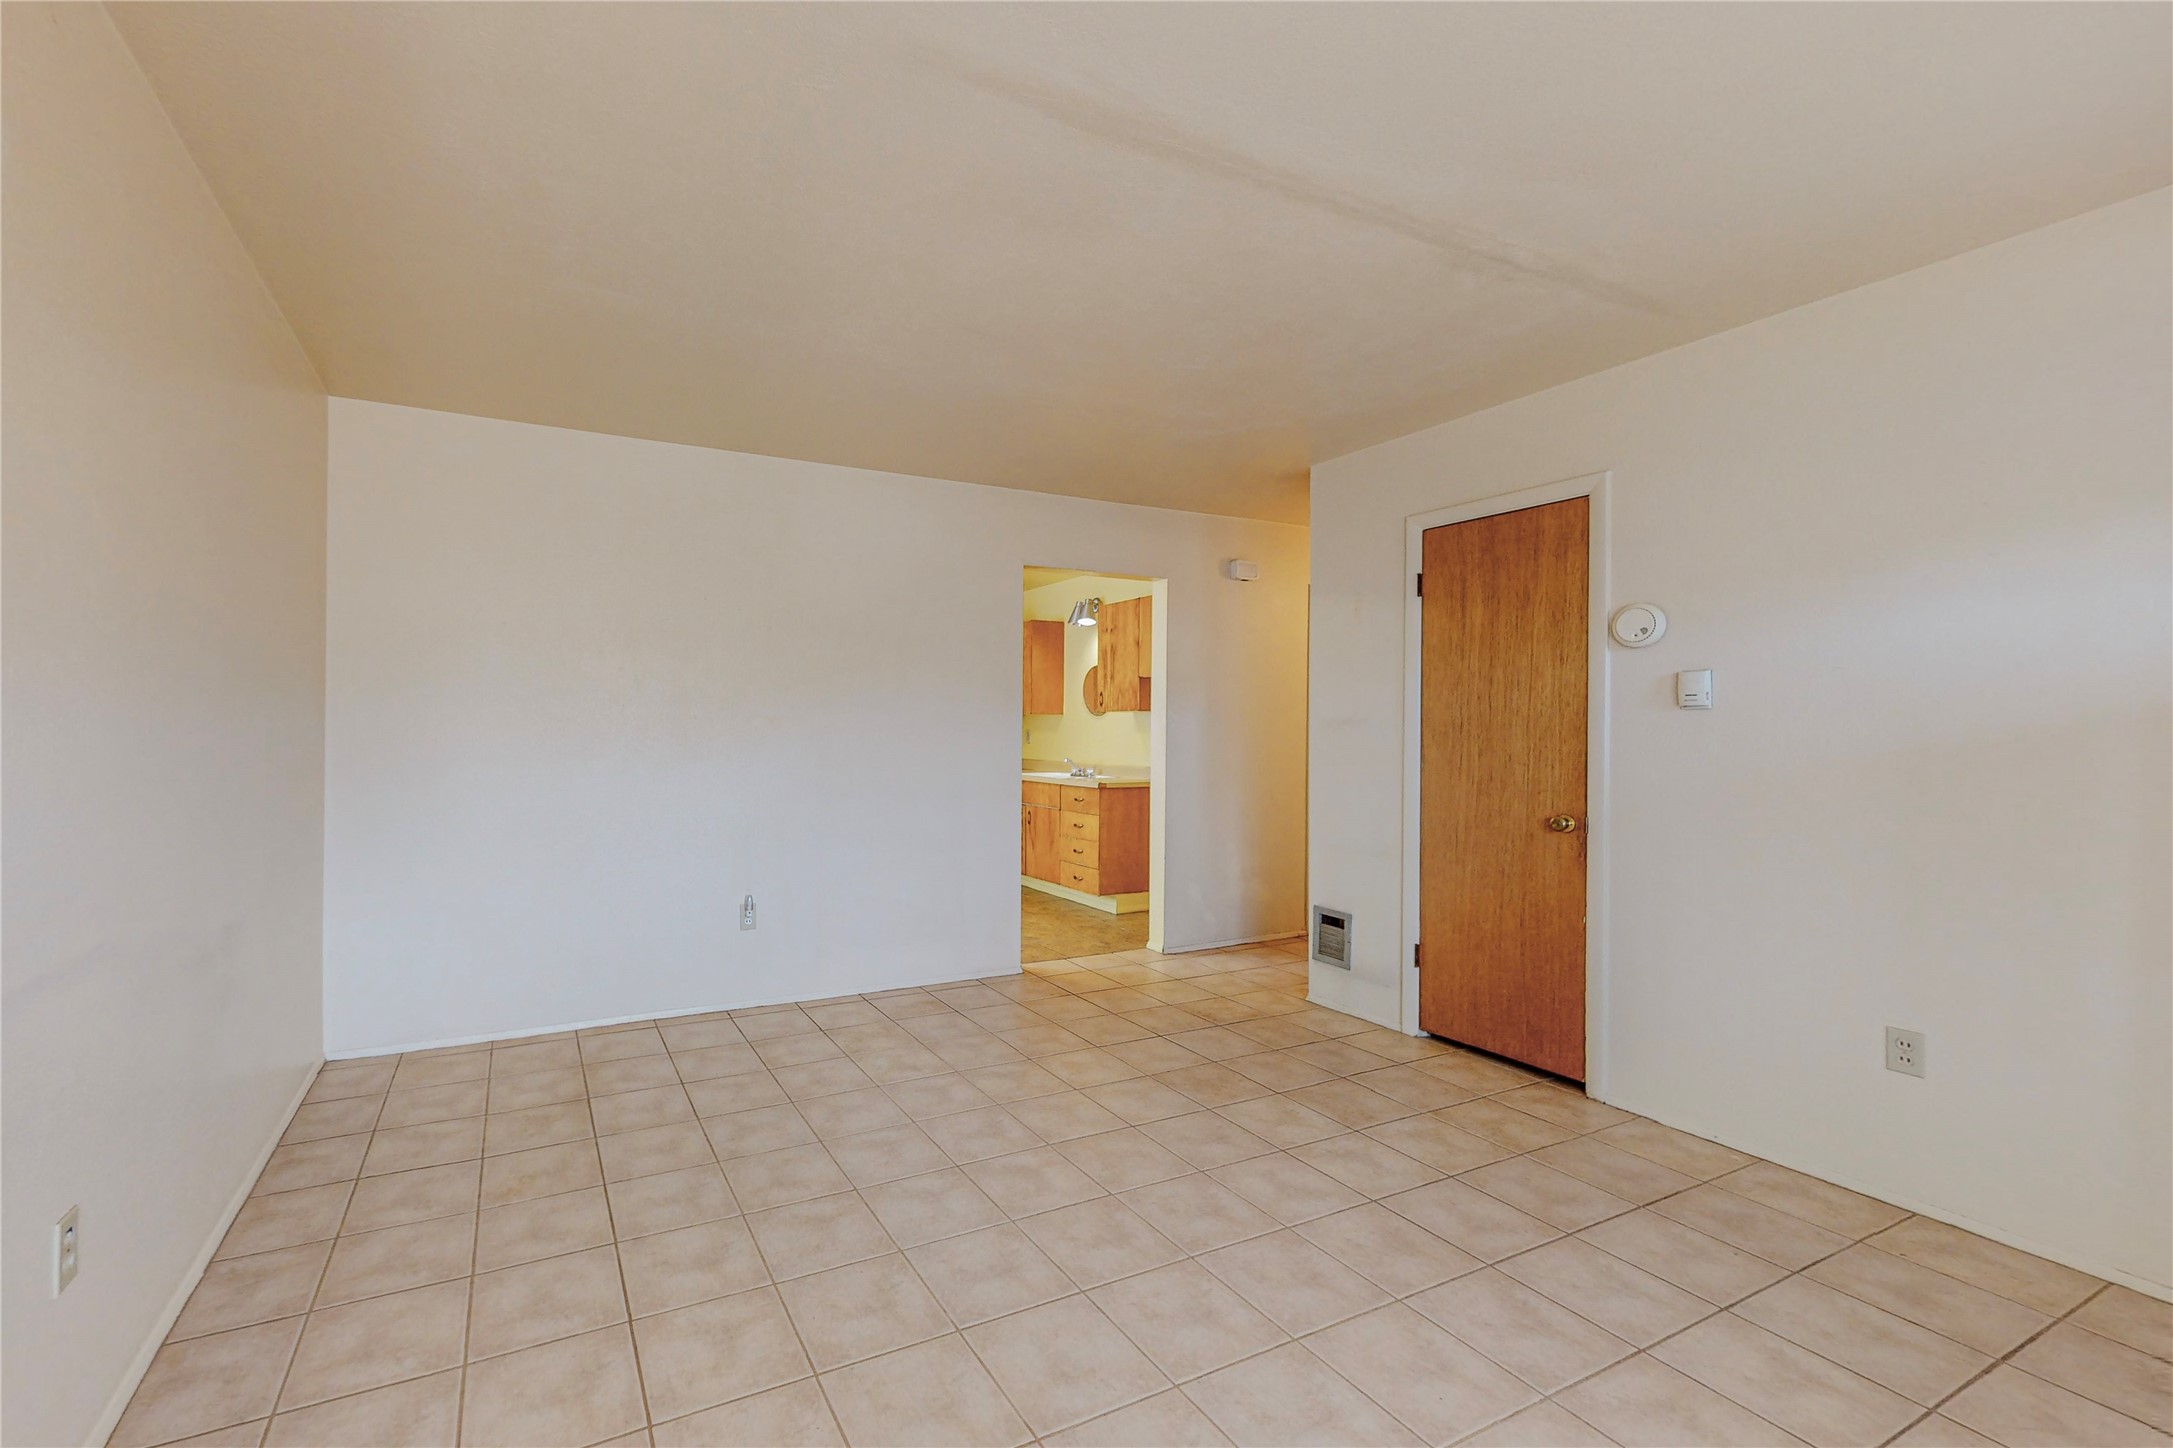 2901 Camino Del Gusto, Santa Fe, New Mexico 87507, 3 Bedrooms Bedrooms, ,1 BathroomBathrooms,Residential,For Sale,2901 Camino Del Gusto,202232978